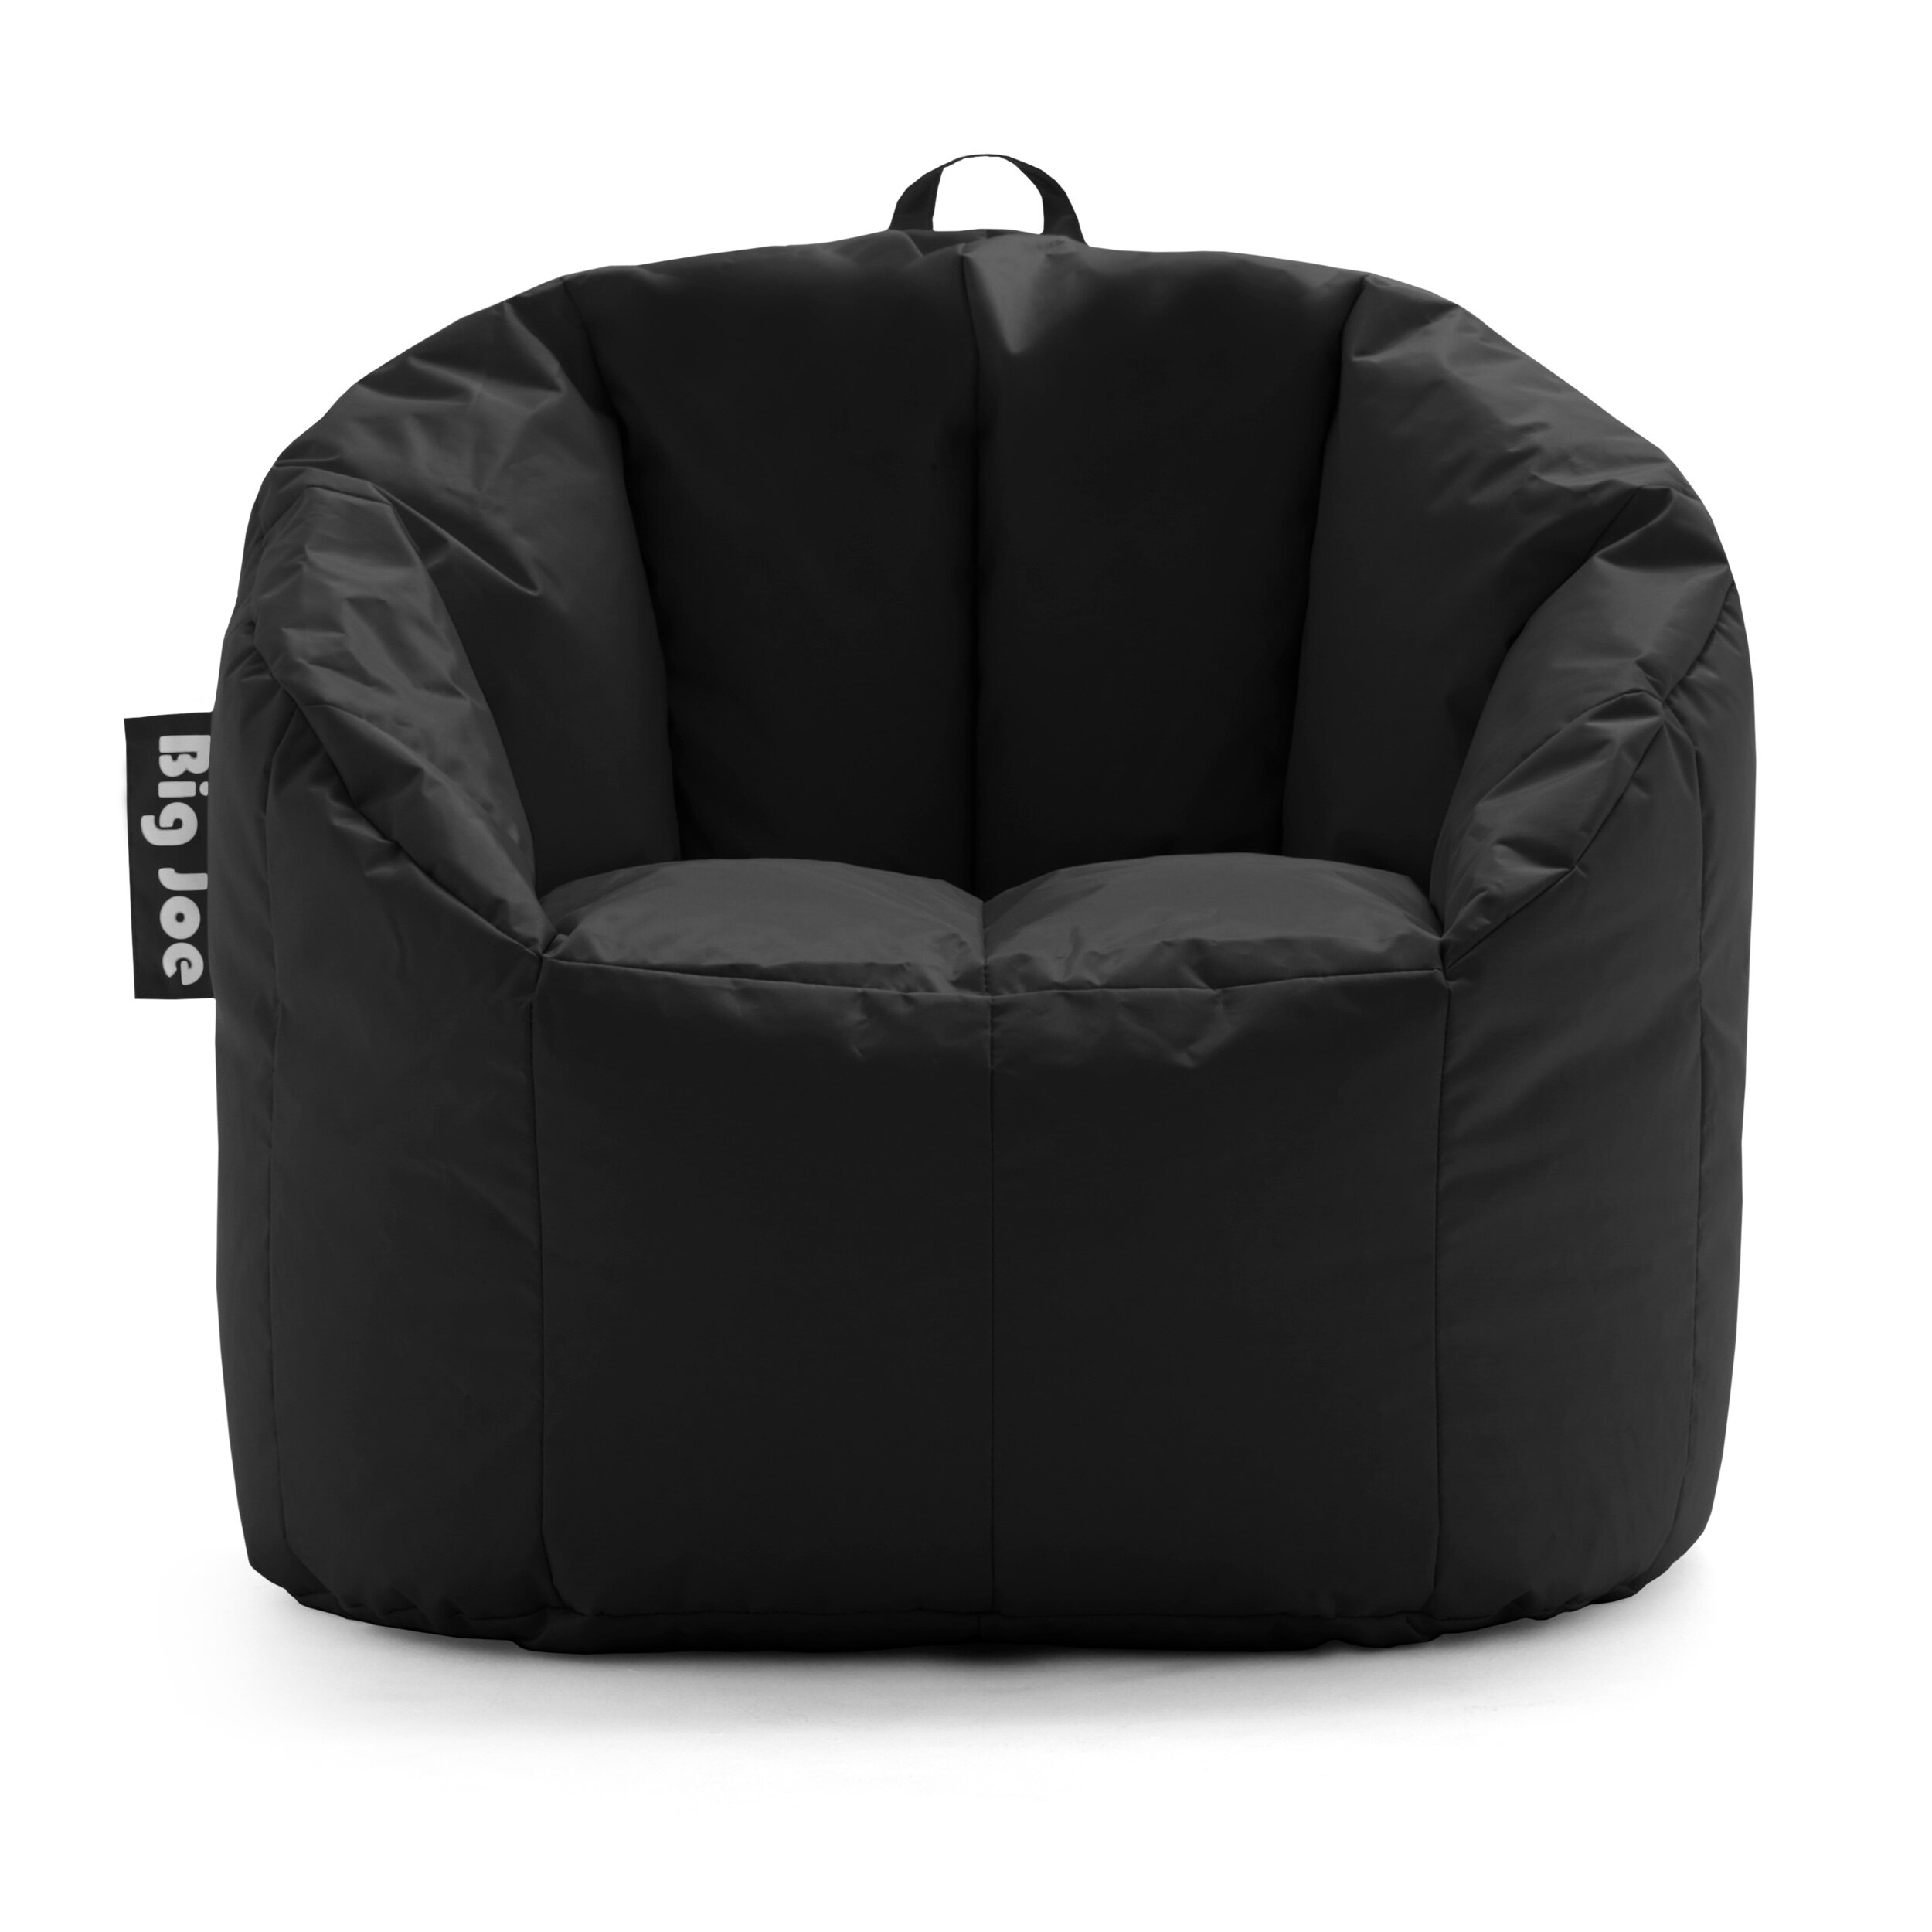 Comfort Research Big Joe Standard Bean Bag Chair Lounger